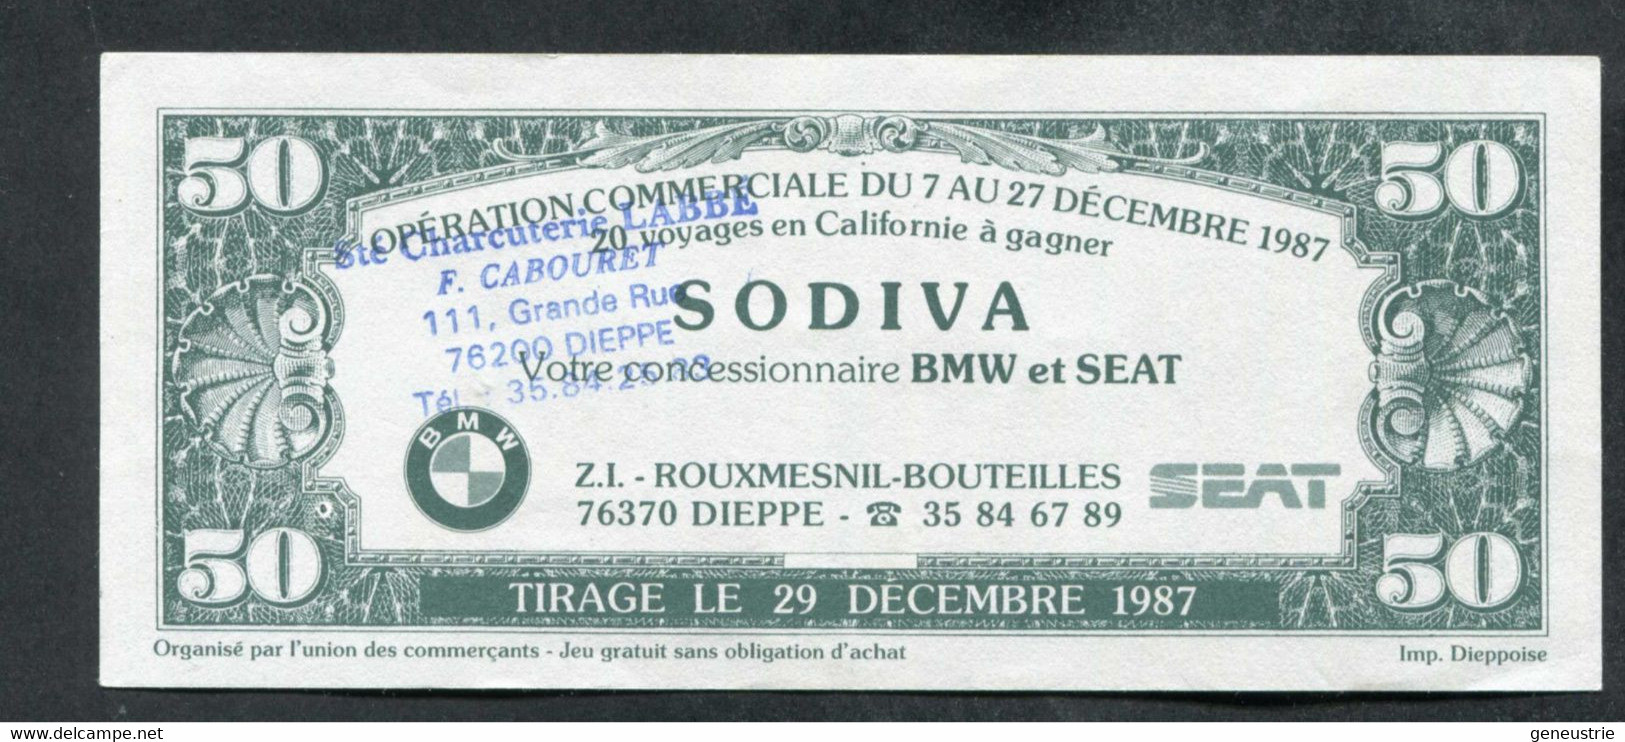 Billet Publicitaire 50 Dollars "Charcuterie Labbé - Dieppe C'est L'Amérique" Sovida Concessionnaire BMW Et SEAT à Dieppe - Specimen